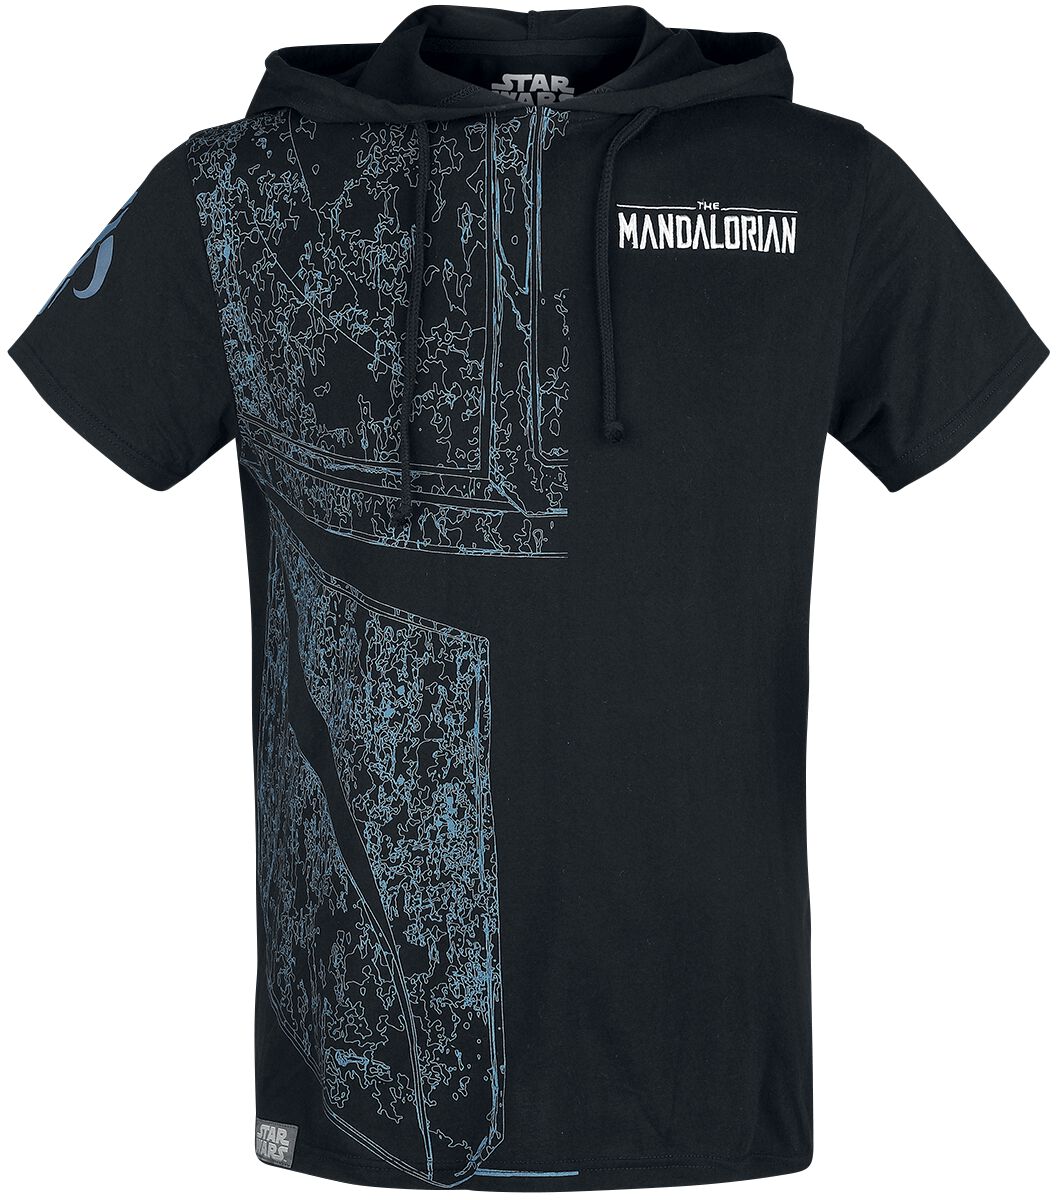 Star Wars T-Shirt - The Mandalorian - S bis XXL - für Männer - Größe M - schwarz  - EMP exklusives Merchandise!